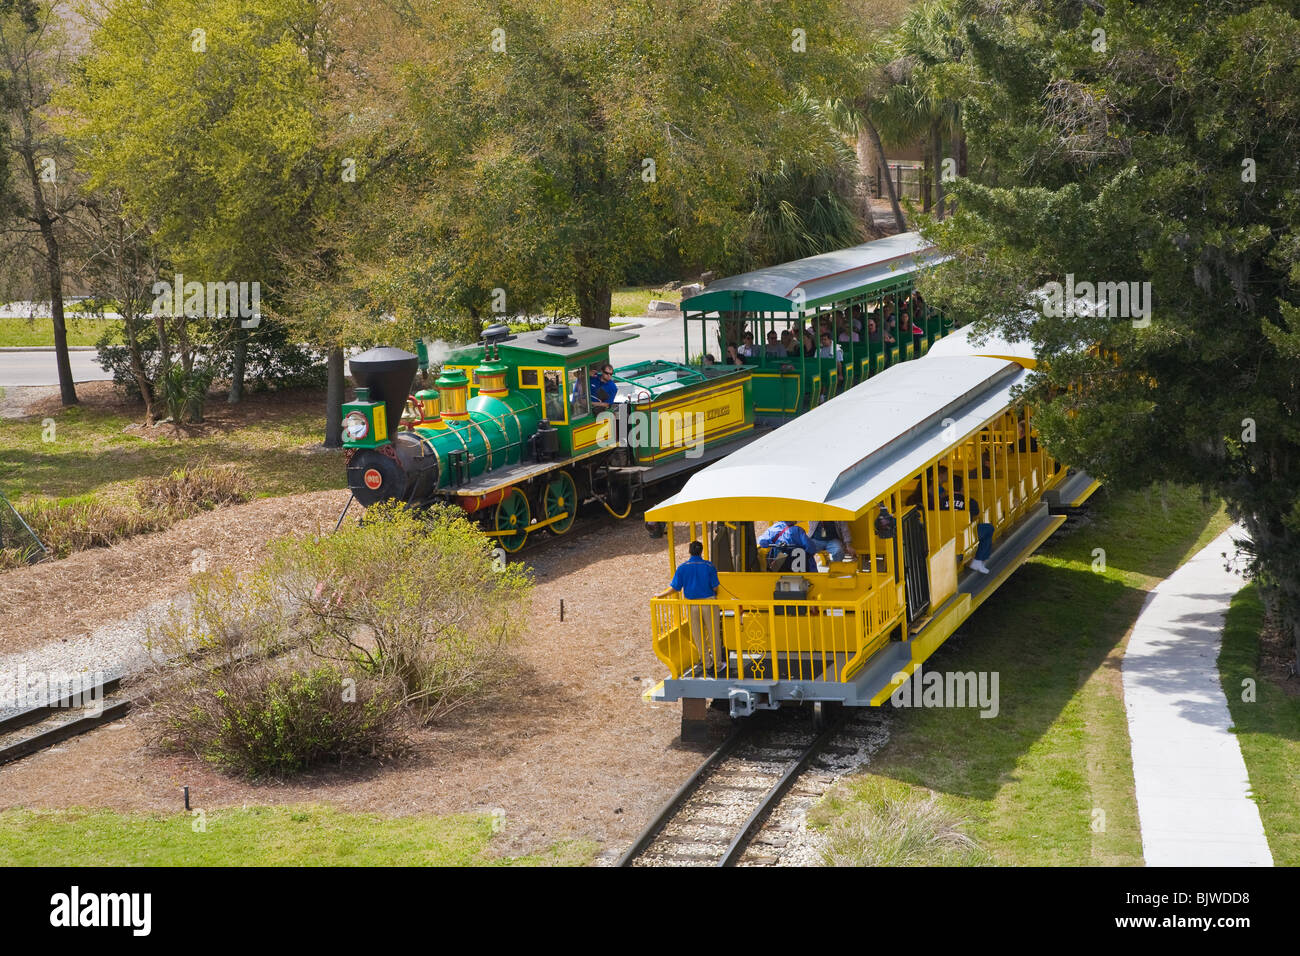 Serengeti Express Zug Eine Alte Altmodische Stream Lokomotive Zug